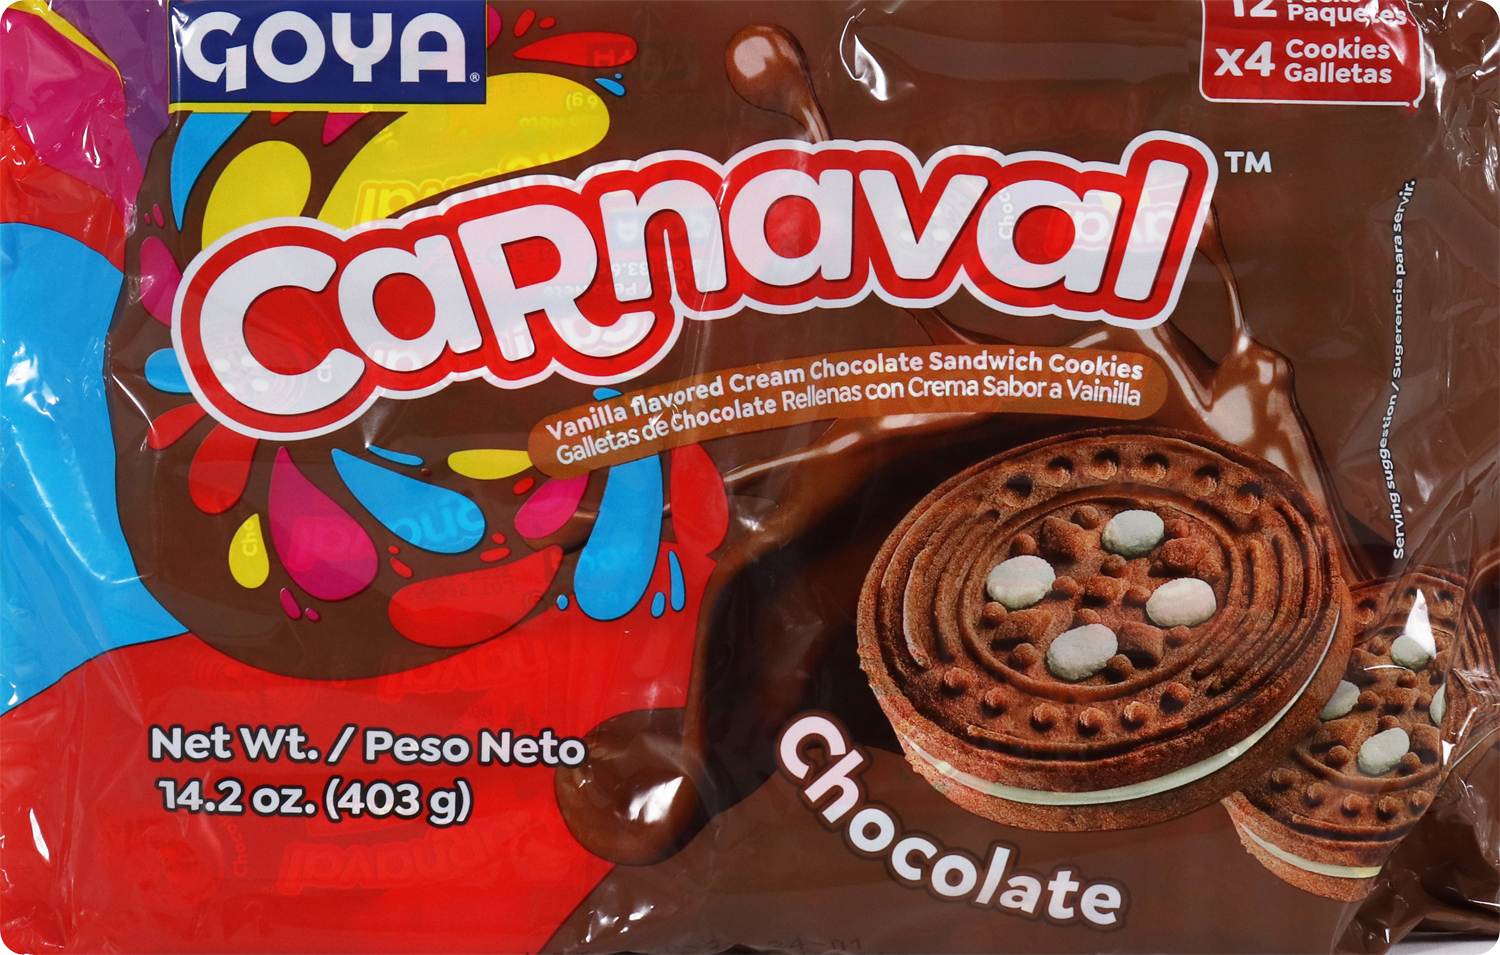 Goya carnaval chocolate cookies 14.2oz